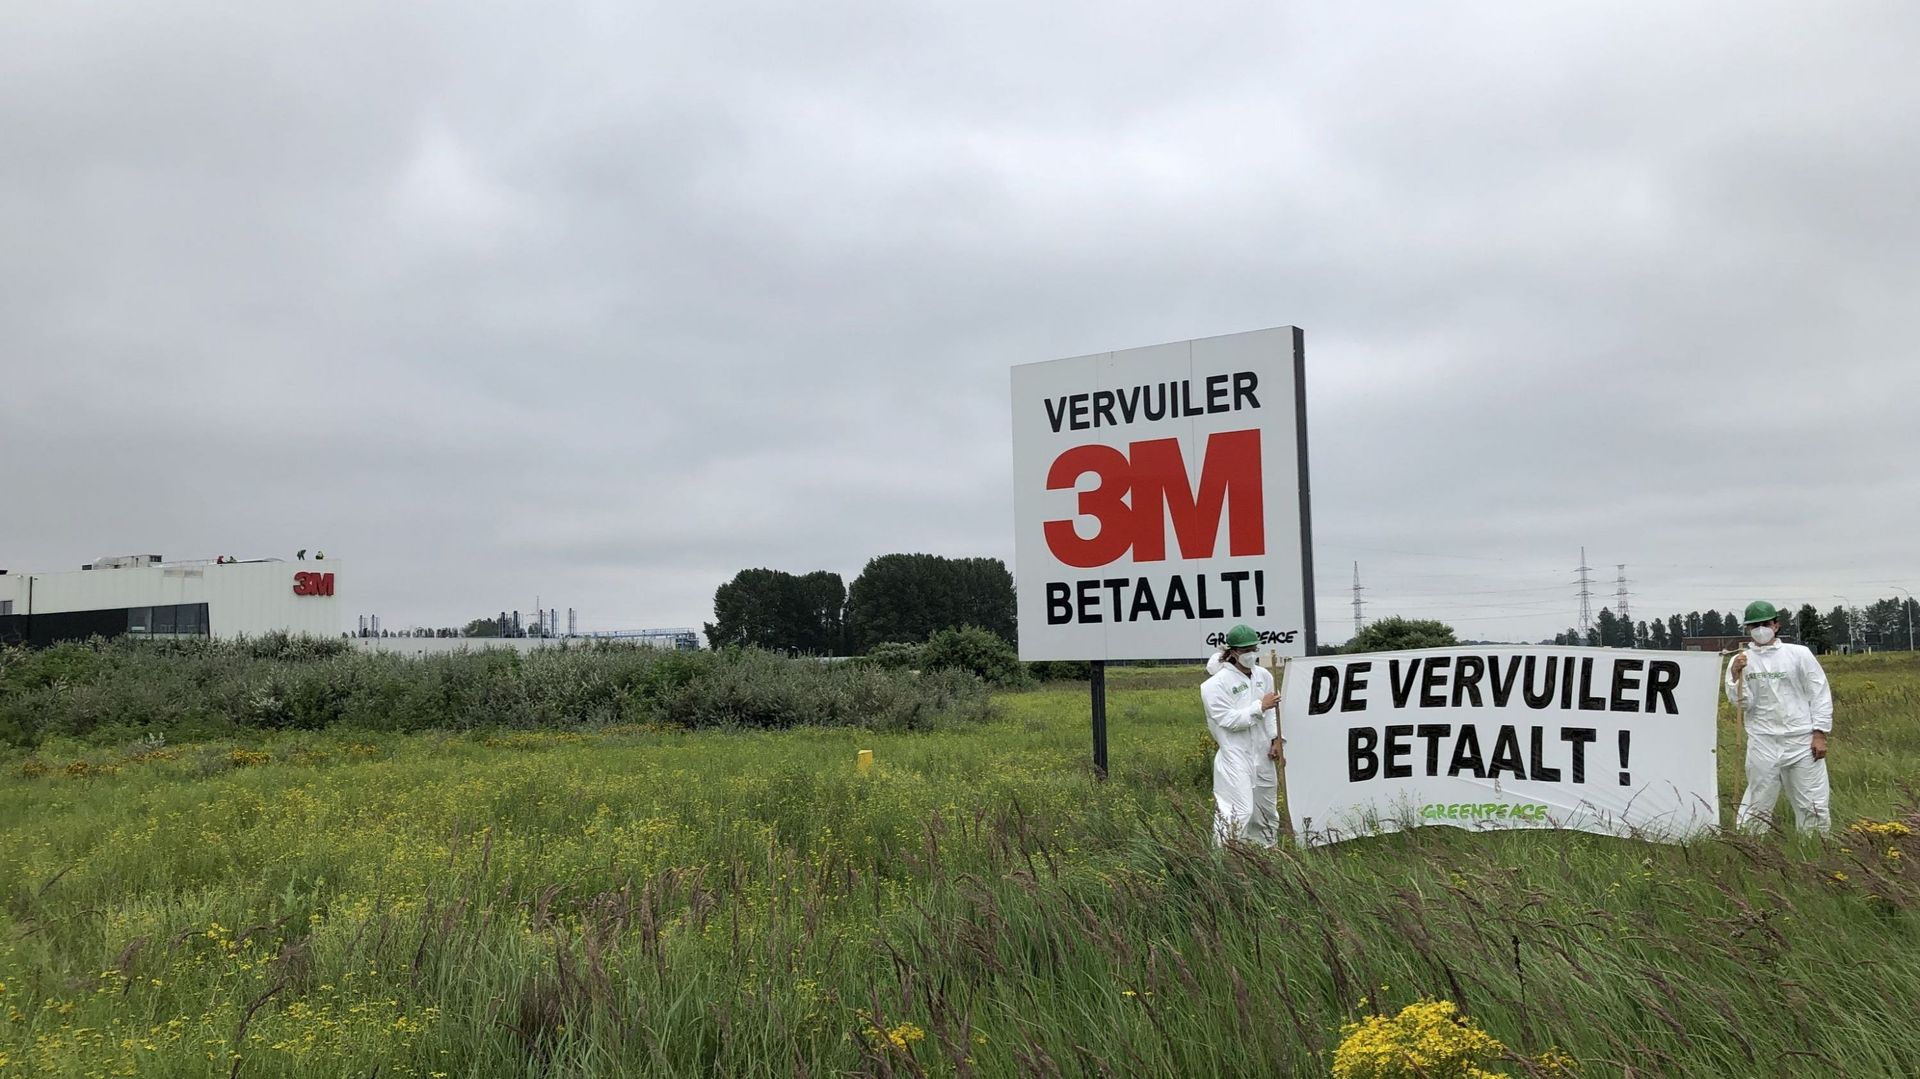 pollution-a-zwijndrecht-la-societe-3m-juge-deraisonnable-l-arret-partiel-de-la-production-de-l-usine